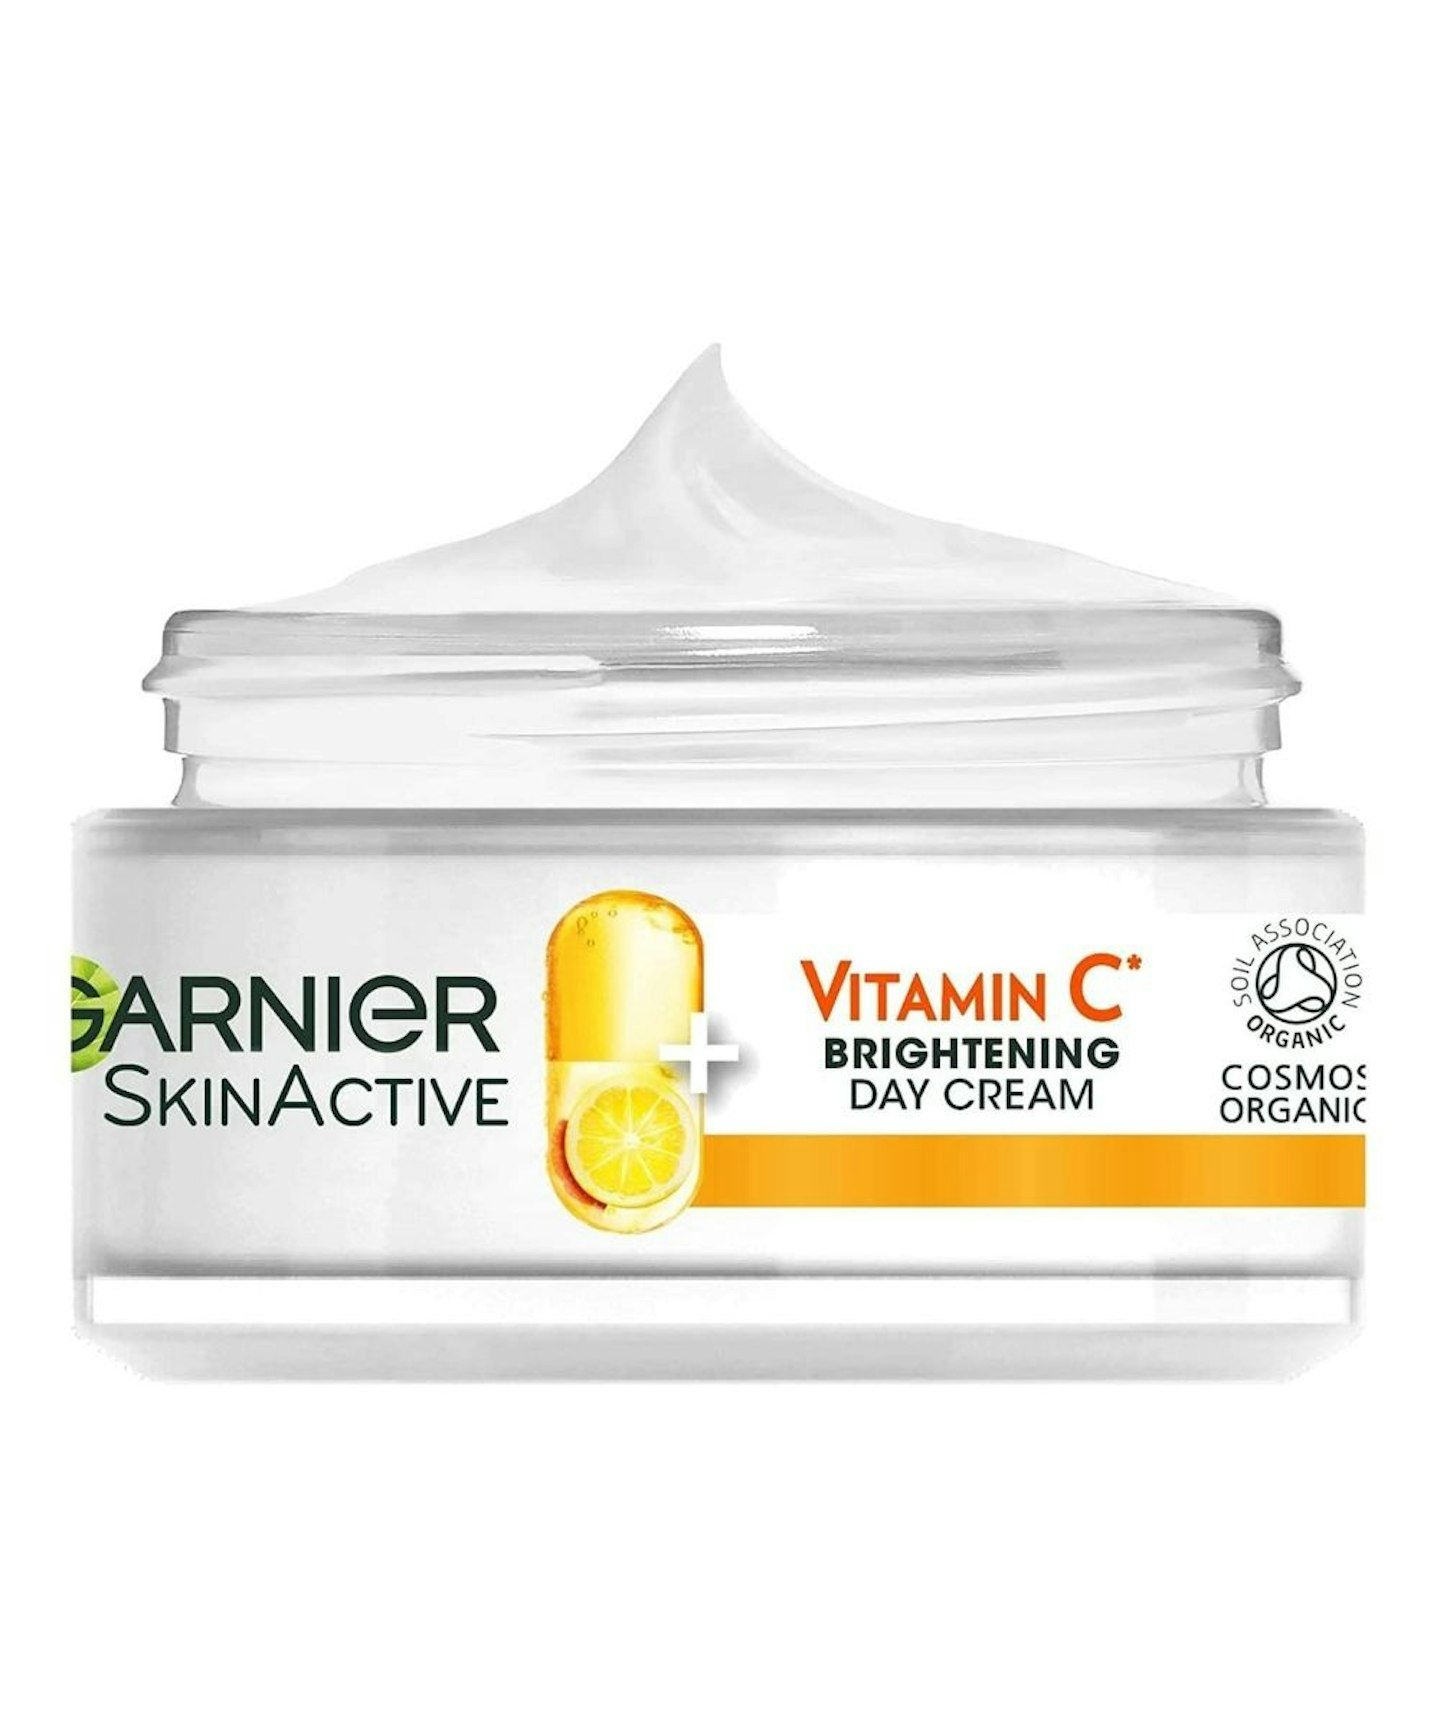 Garnier Vitamin C Brightening Day Cream, 50ml